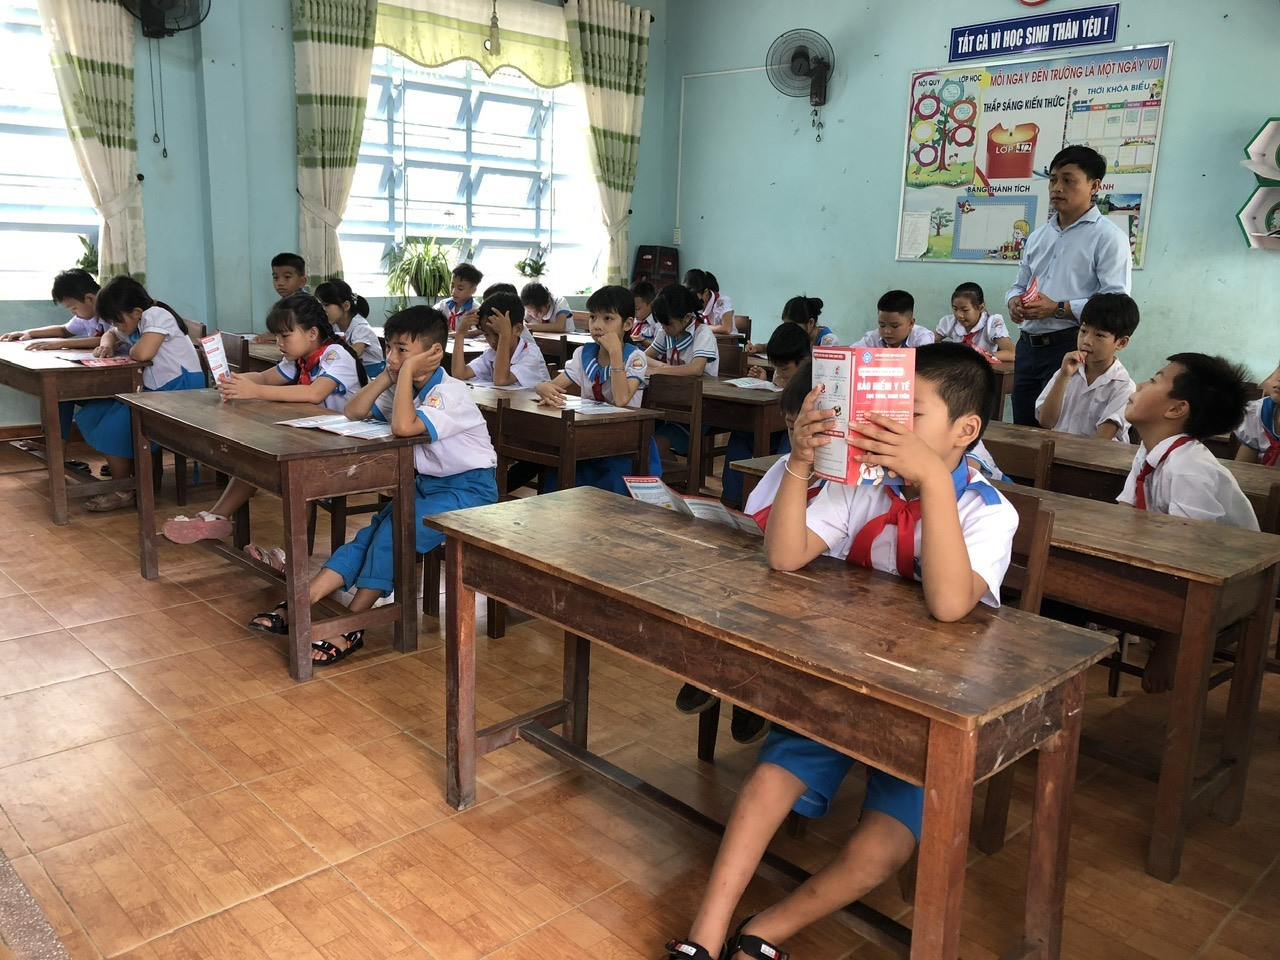 BHXH huyện Thăng Bình phát tờ rơi tuyên truyền bảo hiểm y tế cho học sinh